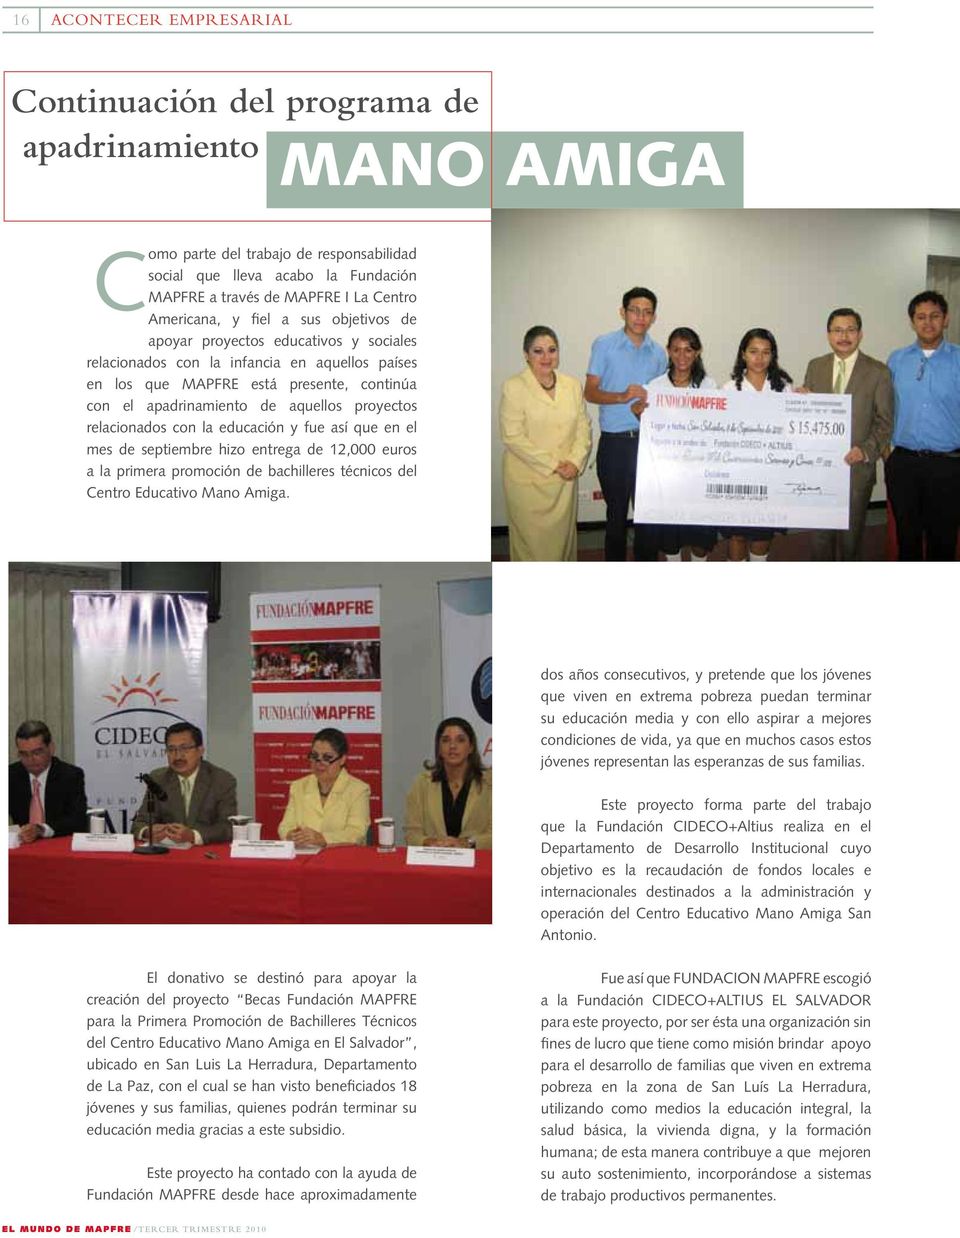 proyectos relacionados con la educación y fue así que en el mes de septiembre hizo entrega de 12,000 euros a la primera promoción de bachilleres técnicos del Centro Educativo Mano Amiga.